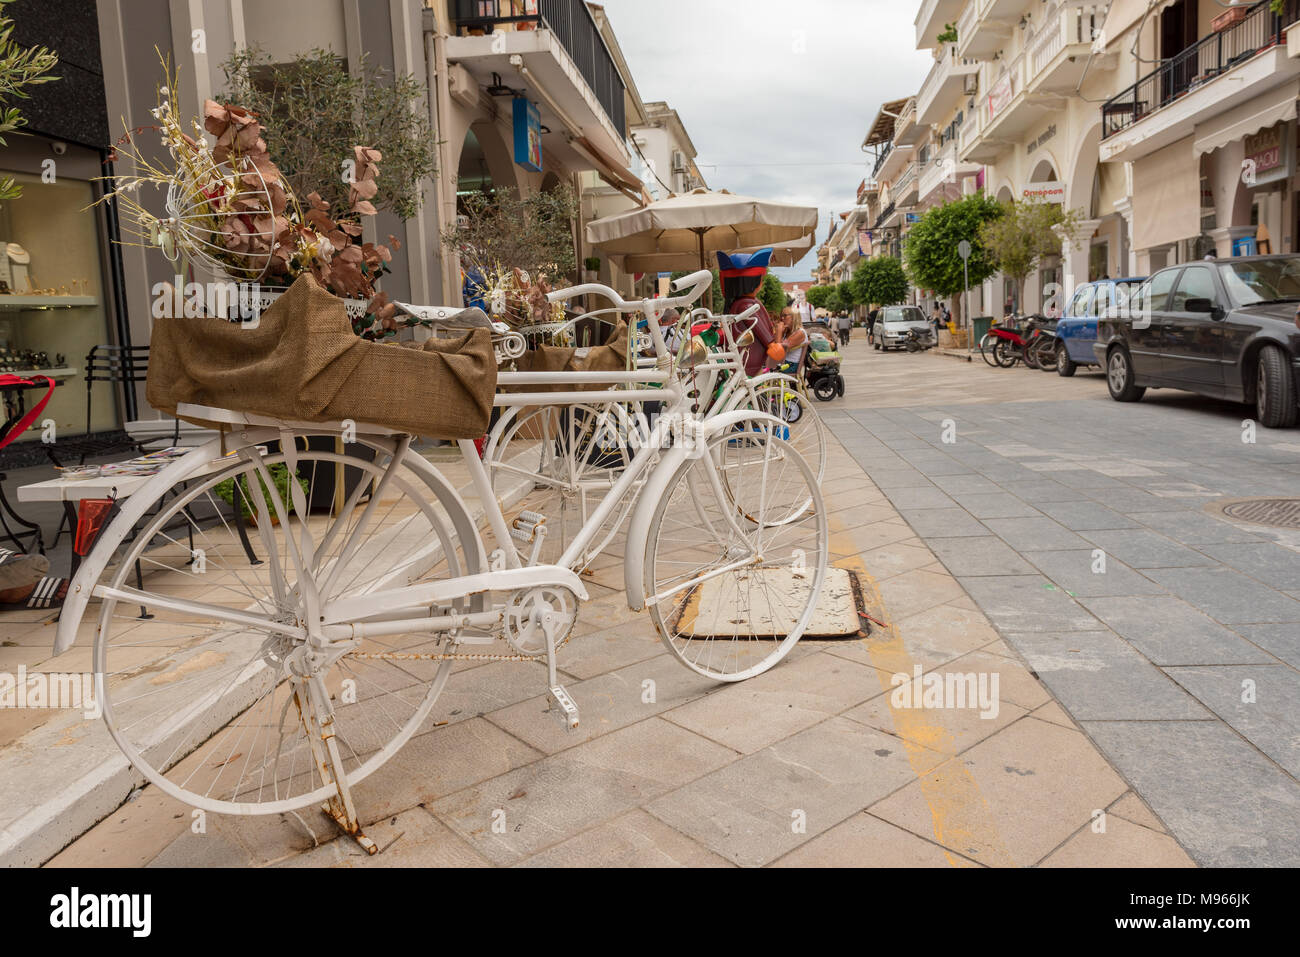 Zante, Grecia - 29 Settembre 2017: Decorative bici sul lungomare nella città di Zante. L'isola di Zante, Grecia Foto Stock